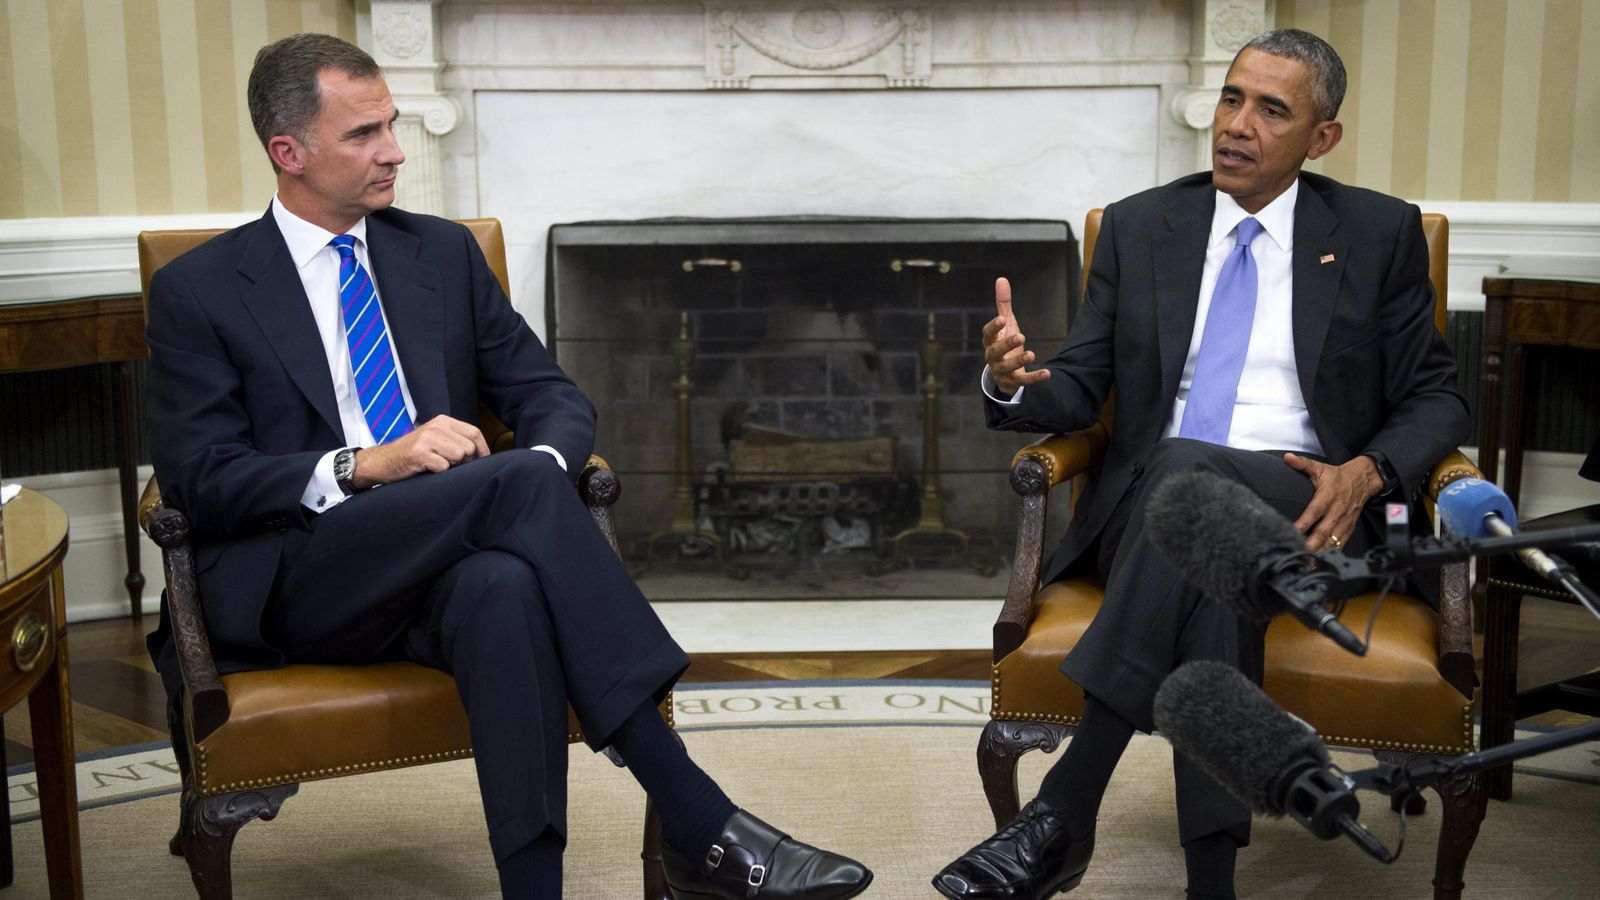 Foto: Encuentro entre el Rey Felipe y Obama en la Casa Blanca. (Efe)